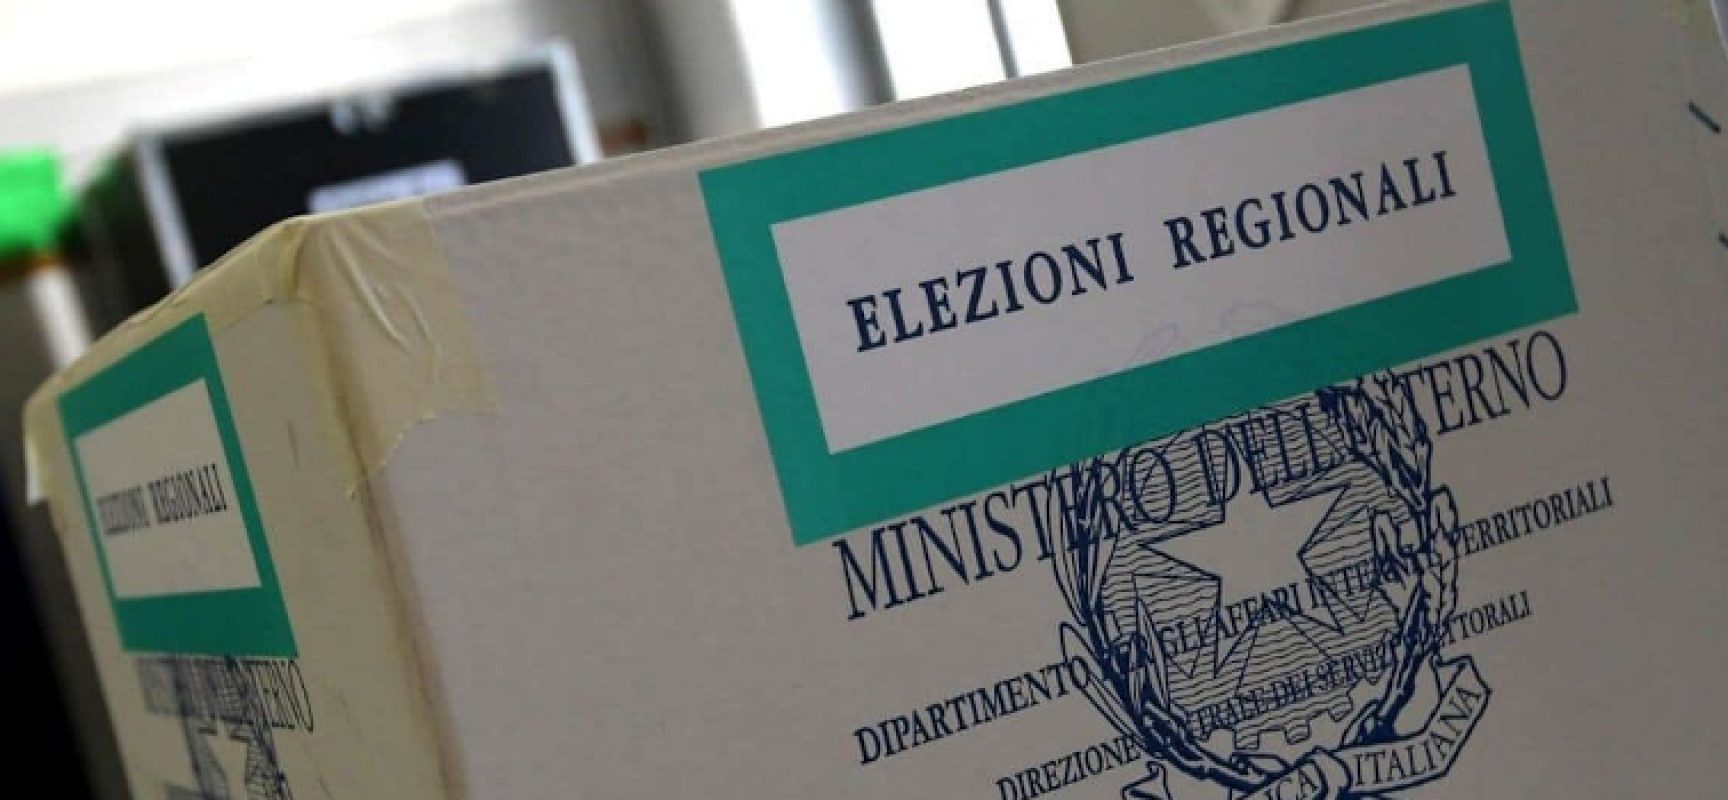 Elezioni Regionali 2020, aggiornamento albo scrutatori fino al 31 gennaio